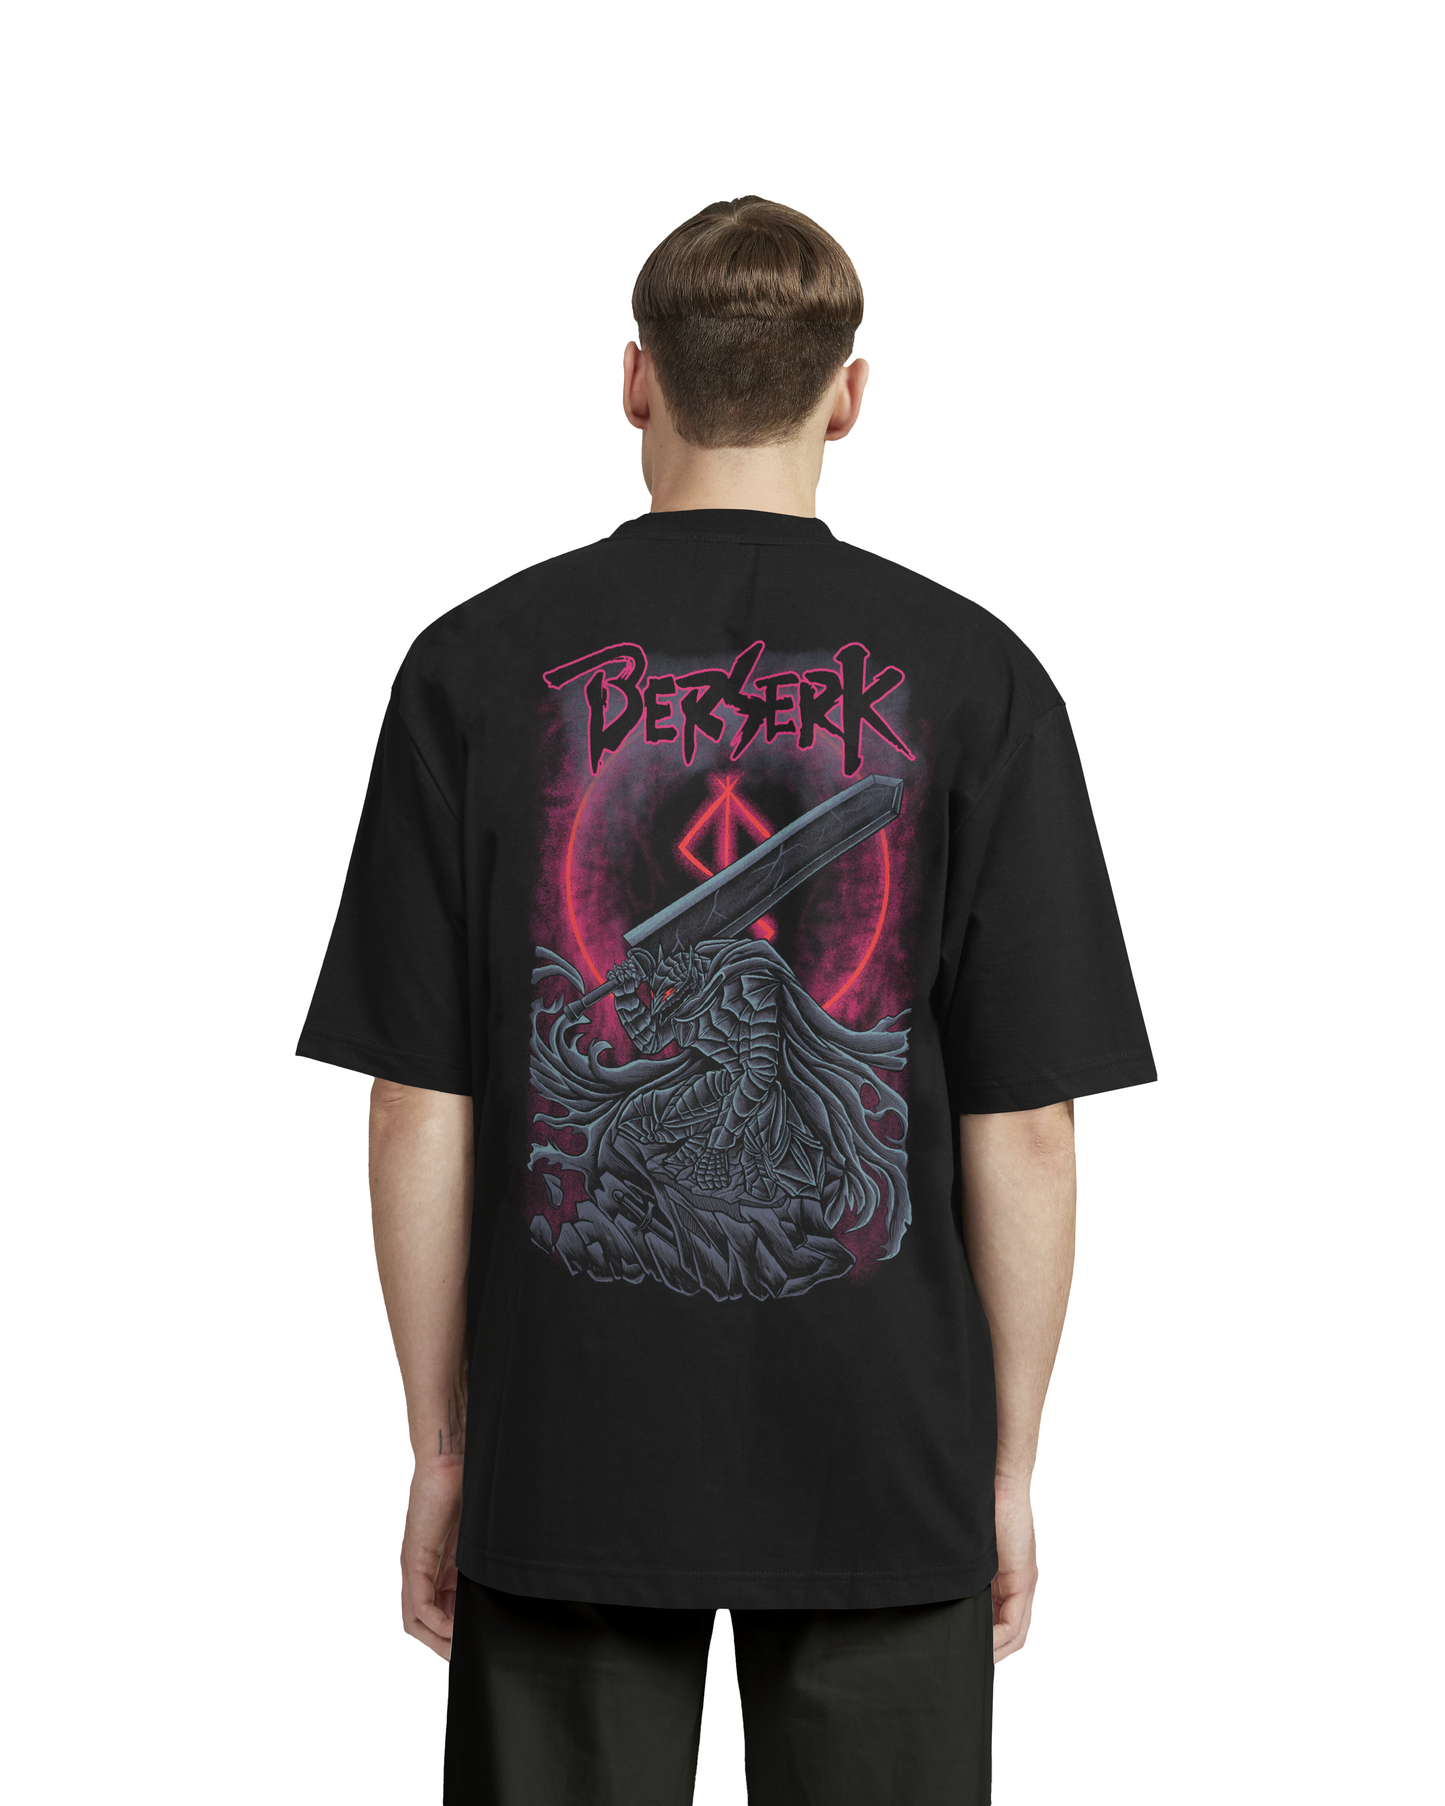 "GUTS x BERSERK" - Oversized Shirt